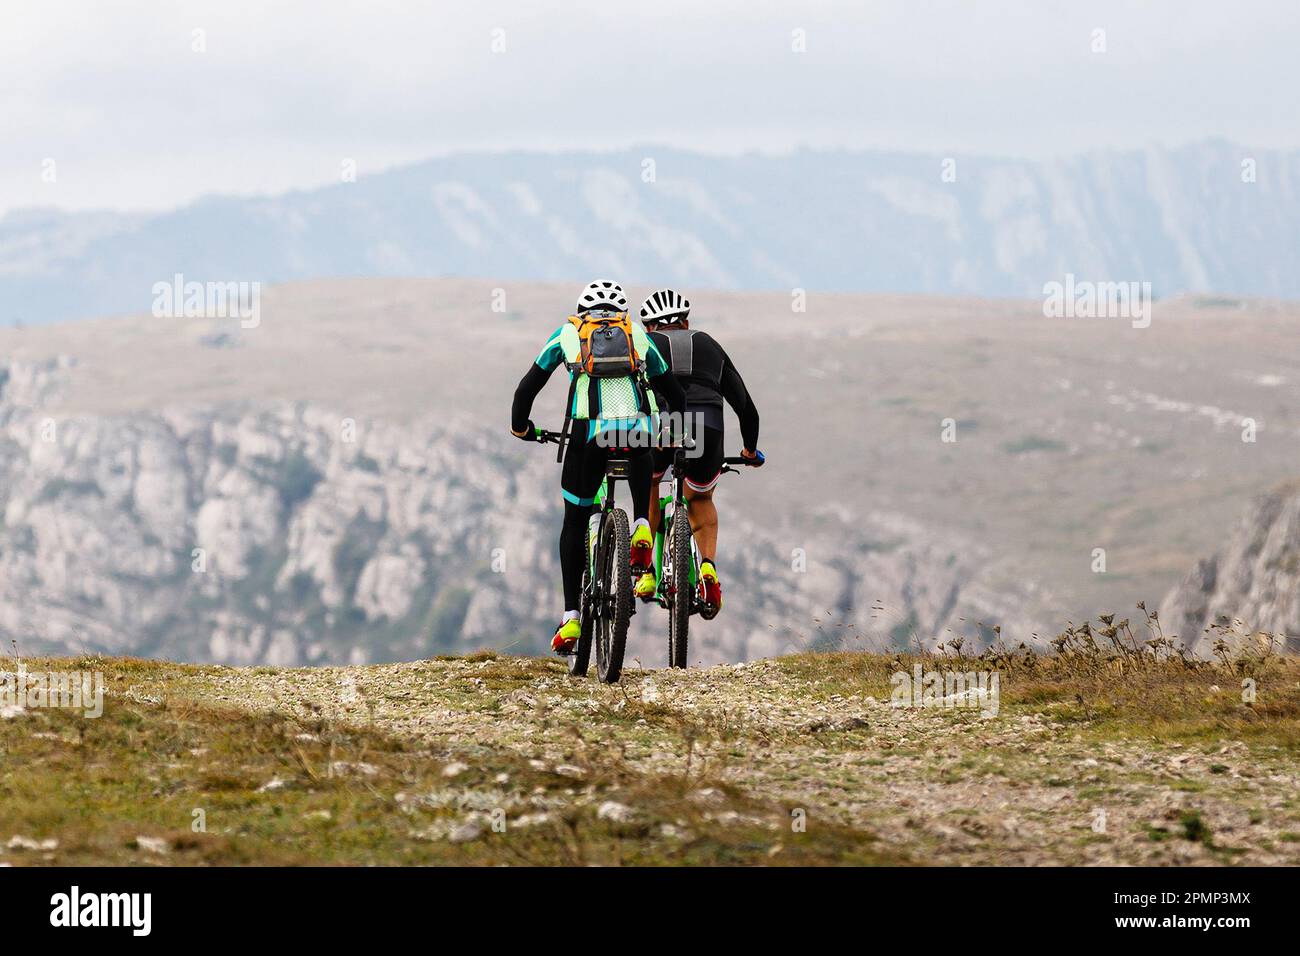 due ciclista maschi in mountain bike nella regione montuosa in viaggio in bicicletta. zaino sul retro del mountain bike Foto Stock